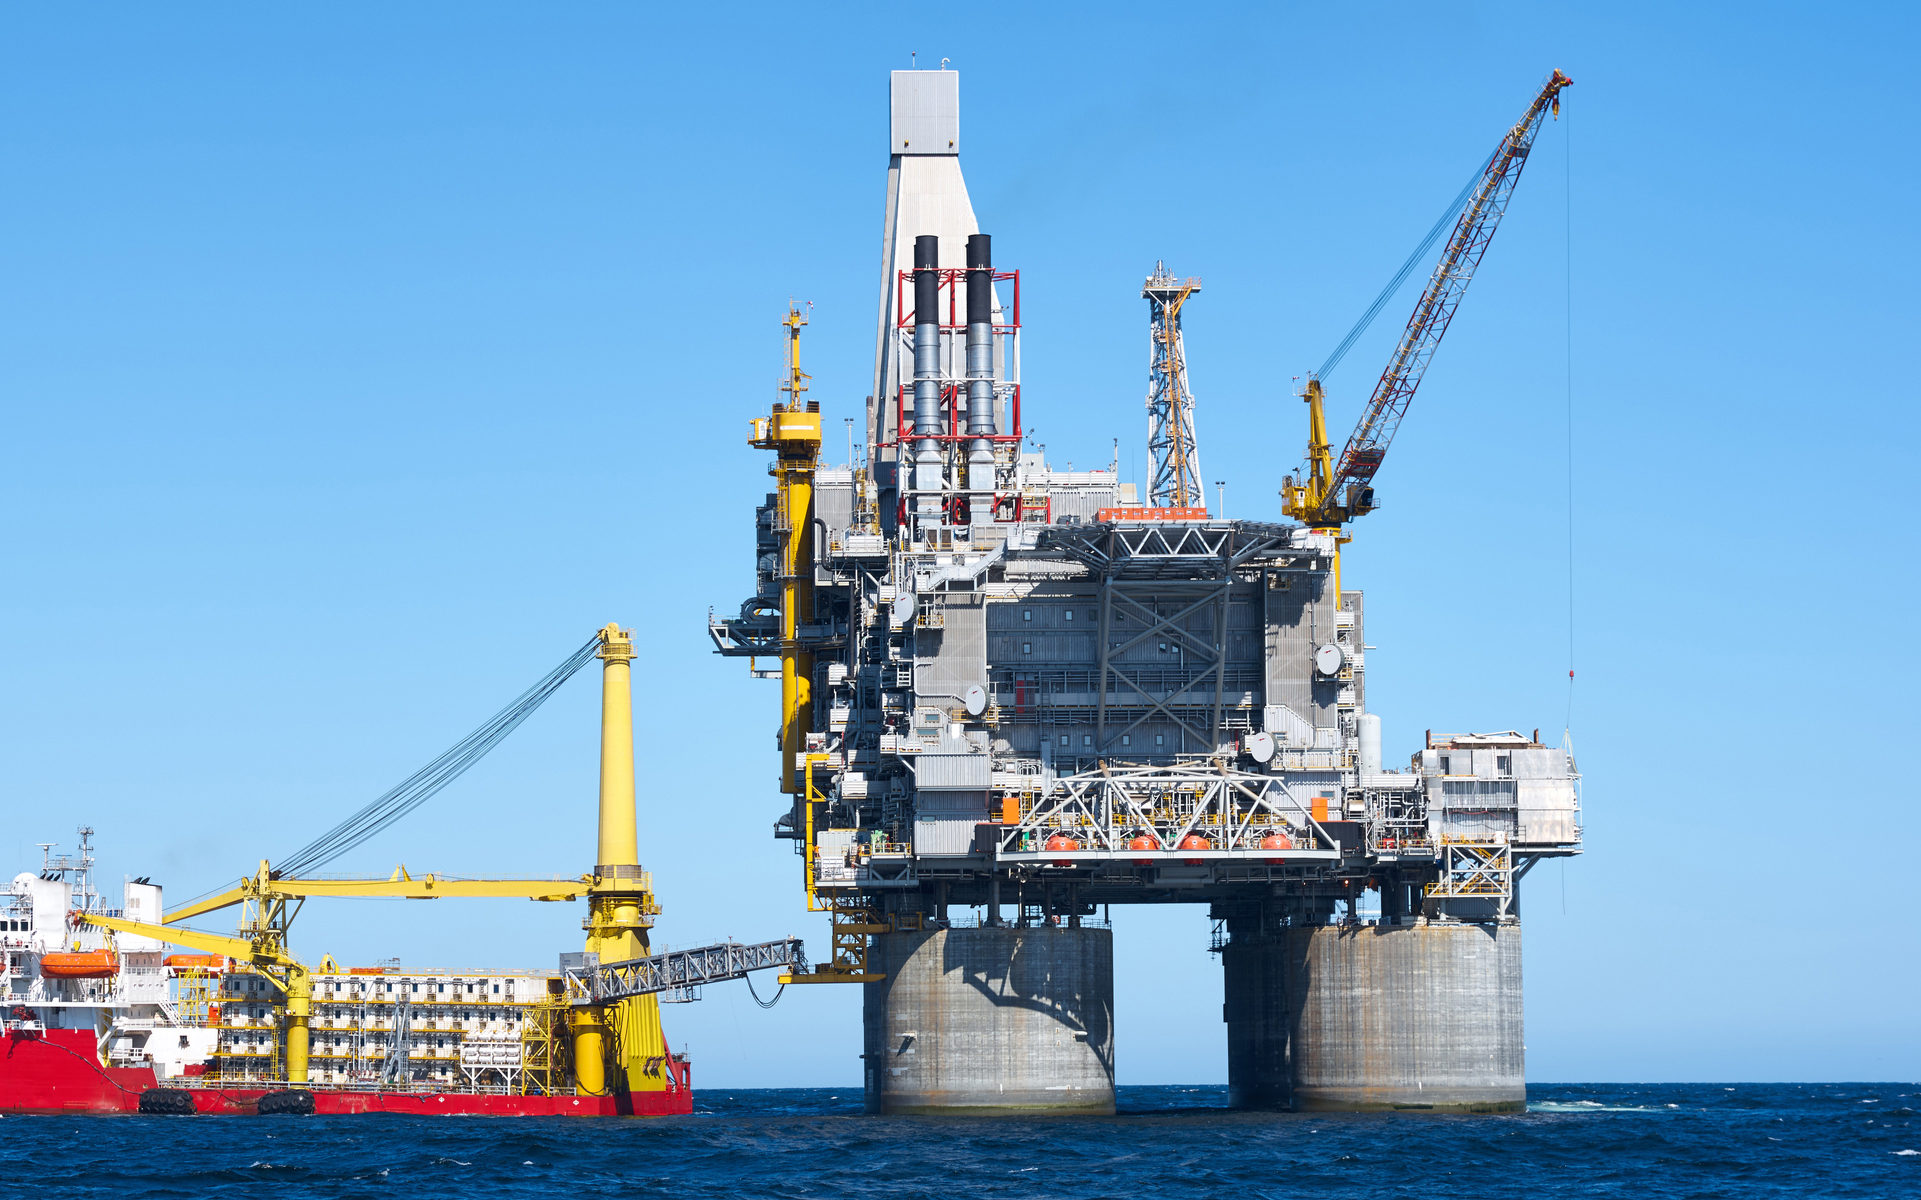  Plataforma petrolífera e buque de apoio na zona offshore.  Ceo azul, mar.  fotofusión